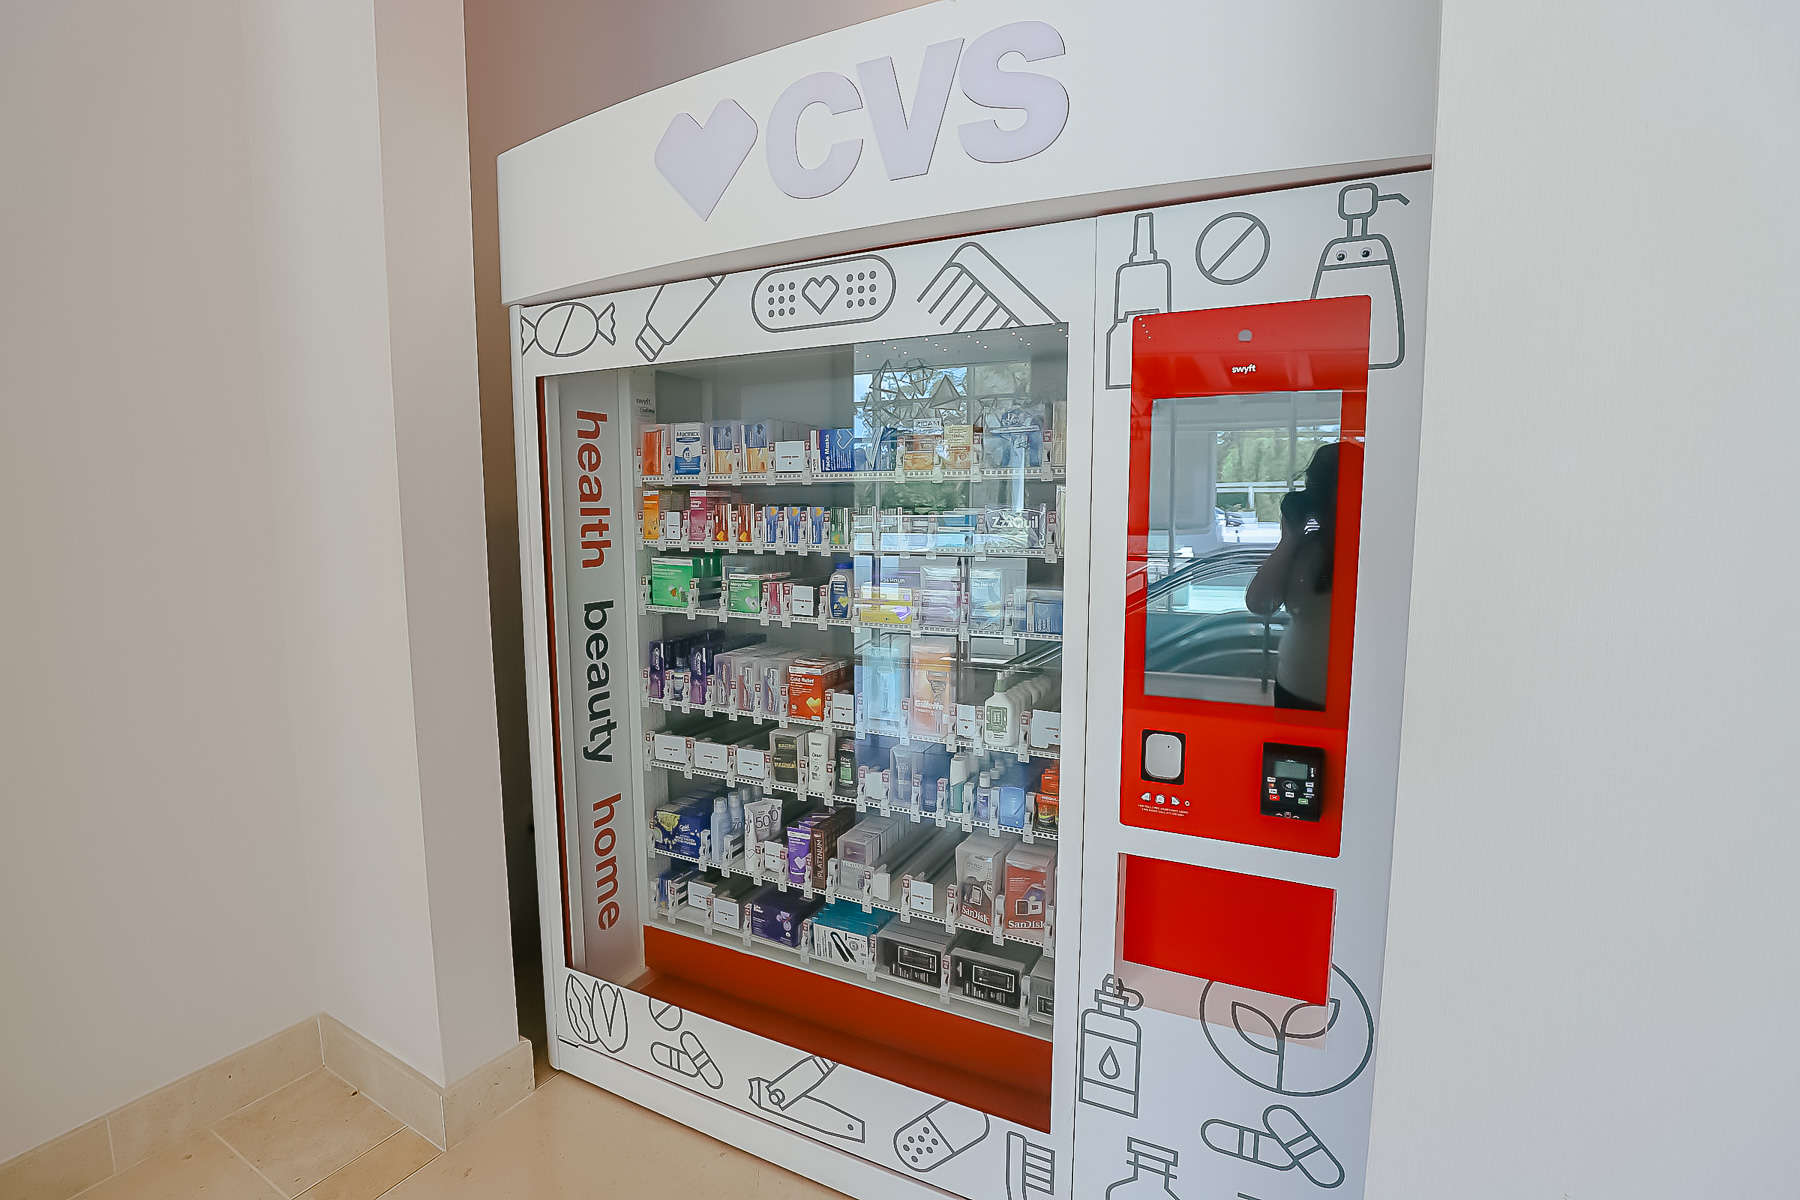 A built-in CVS vending machine 